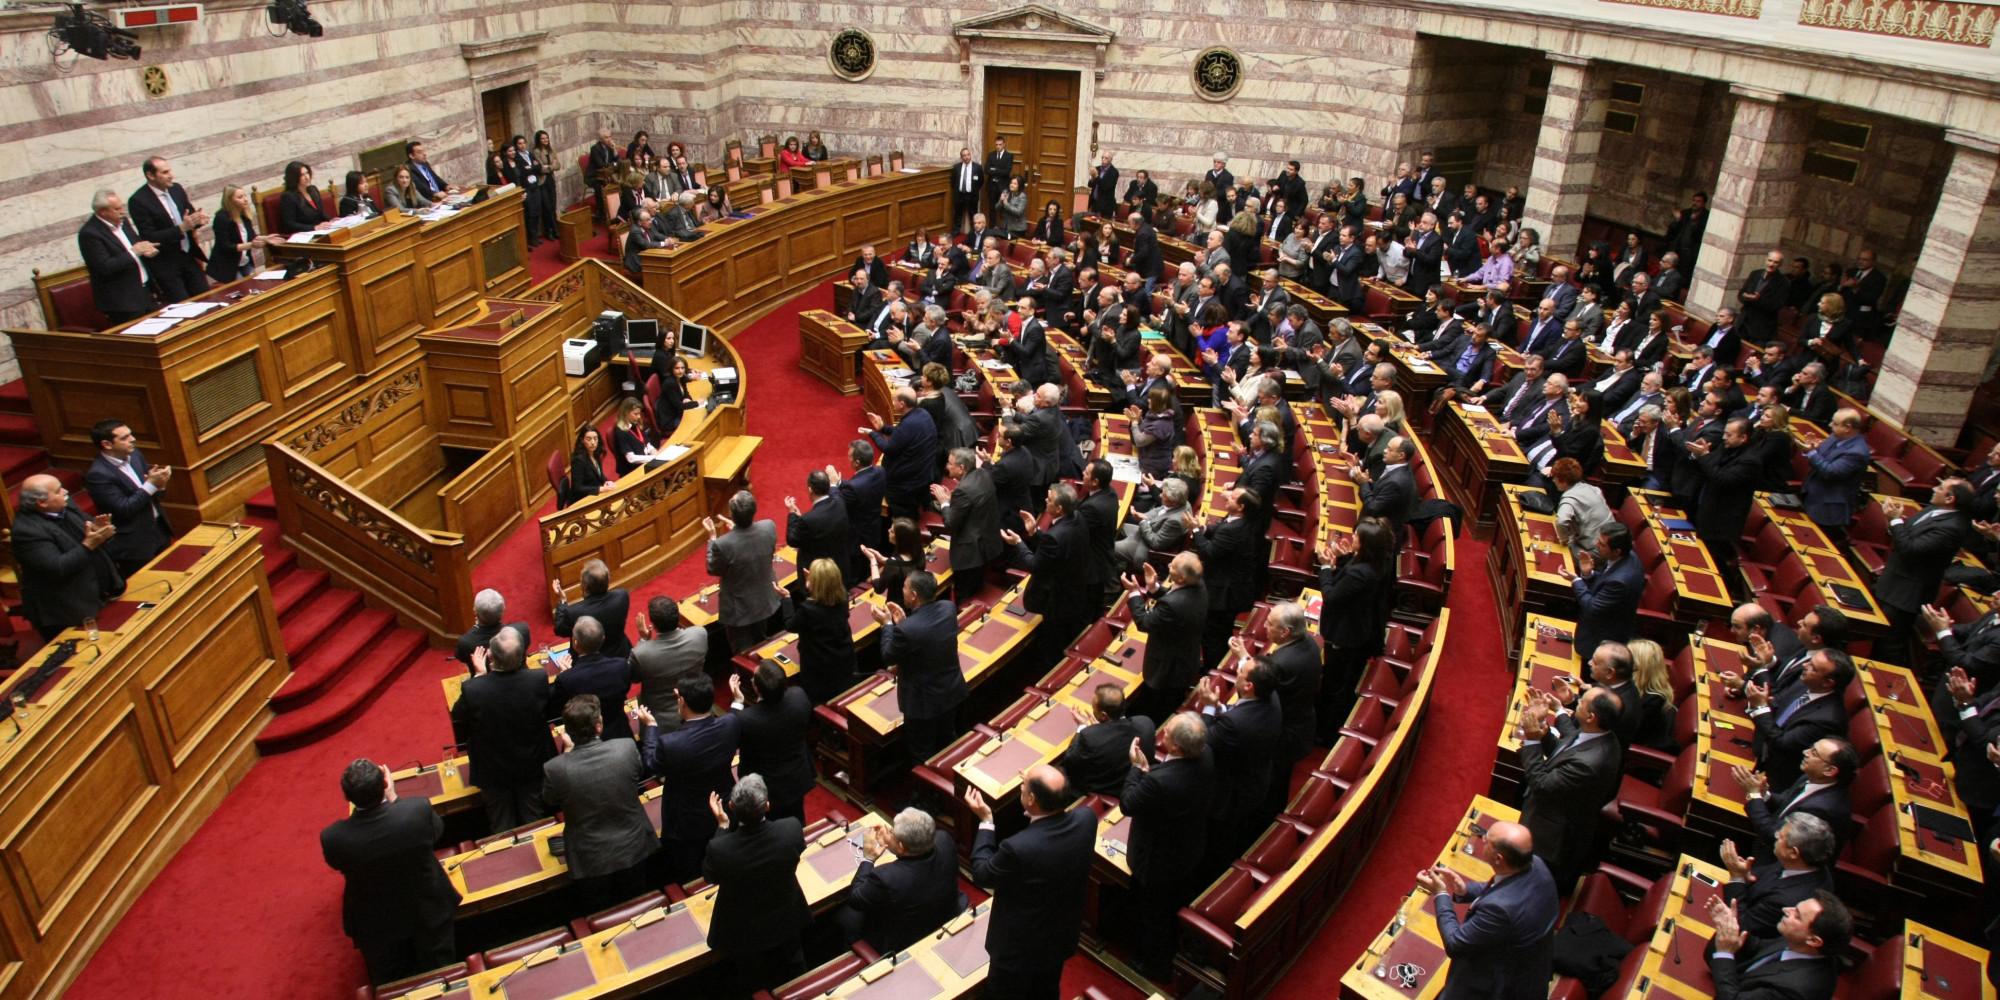 Σήμερα η συνεδρίαση της Ολομέλειας για την πρόταση Συνταγματικής Αναθεώρησης που έχει καταθέσει ο ΣΥΡΙΖΑ